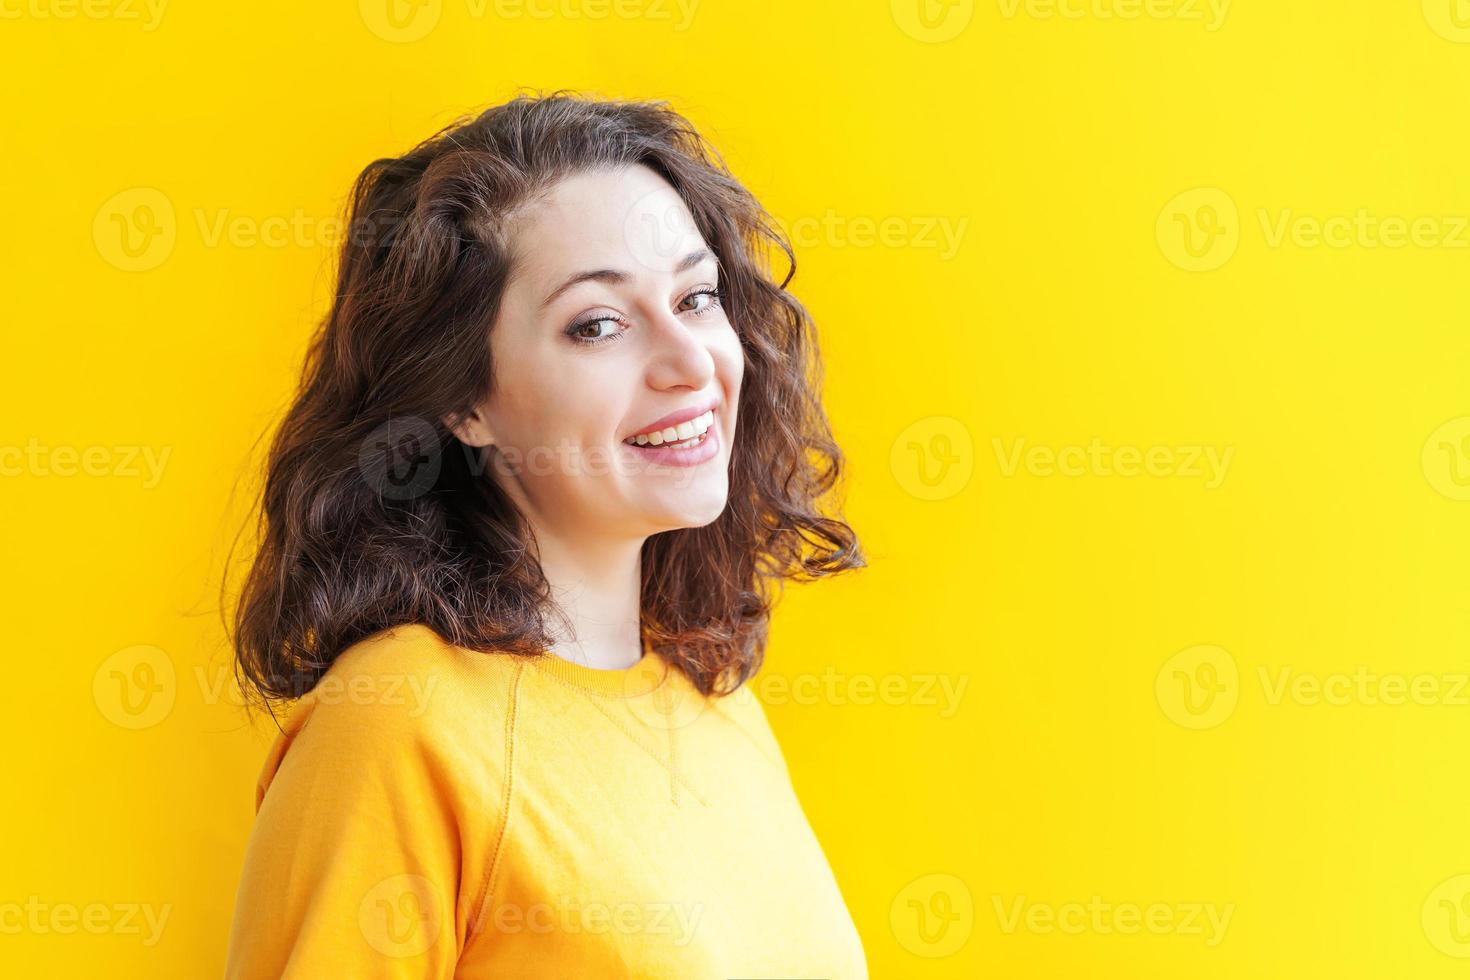 garota feliz sorrindo. beleza retrato jovem feliz positivo rindo morena sobre fundo amarelo isolado. mulher europeia. emoção humana positiva expressão facial linguagem corporal foto